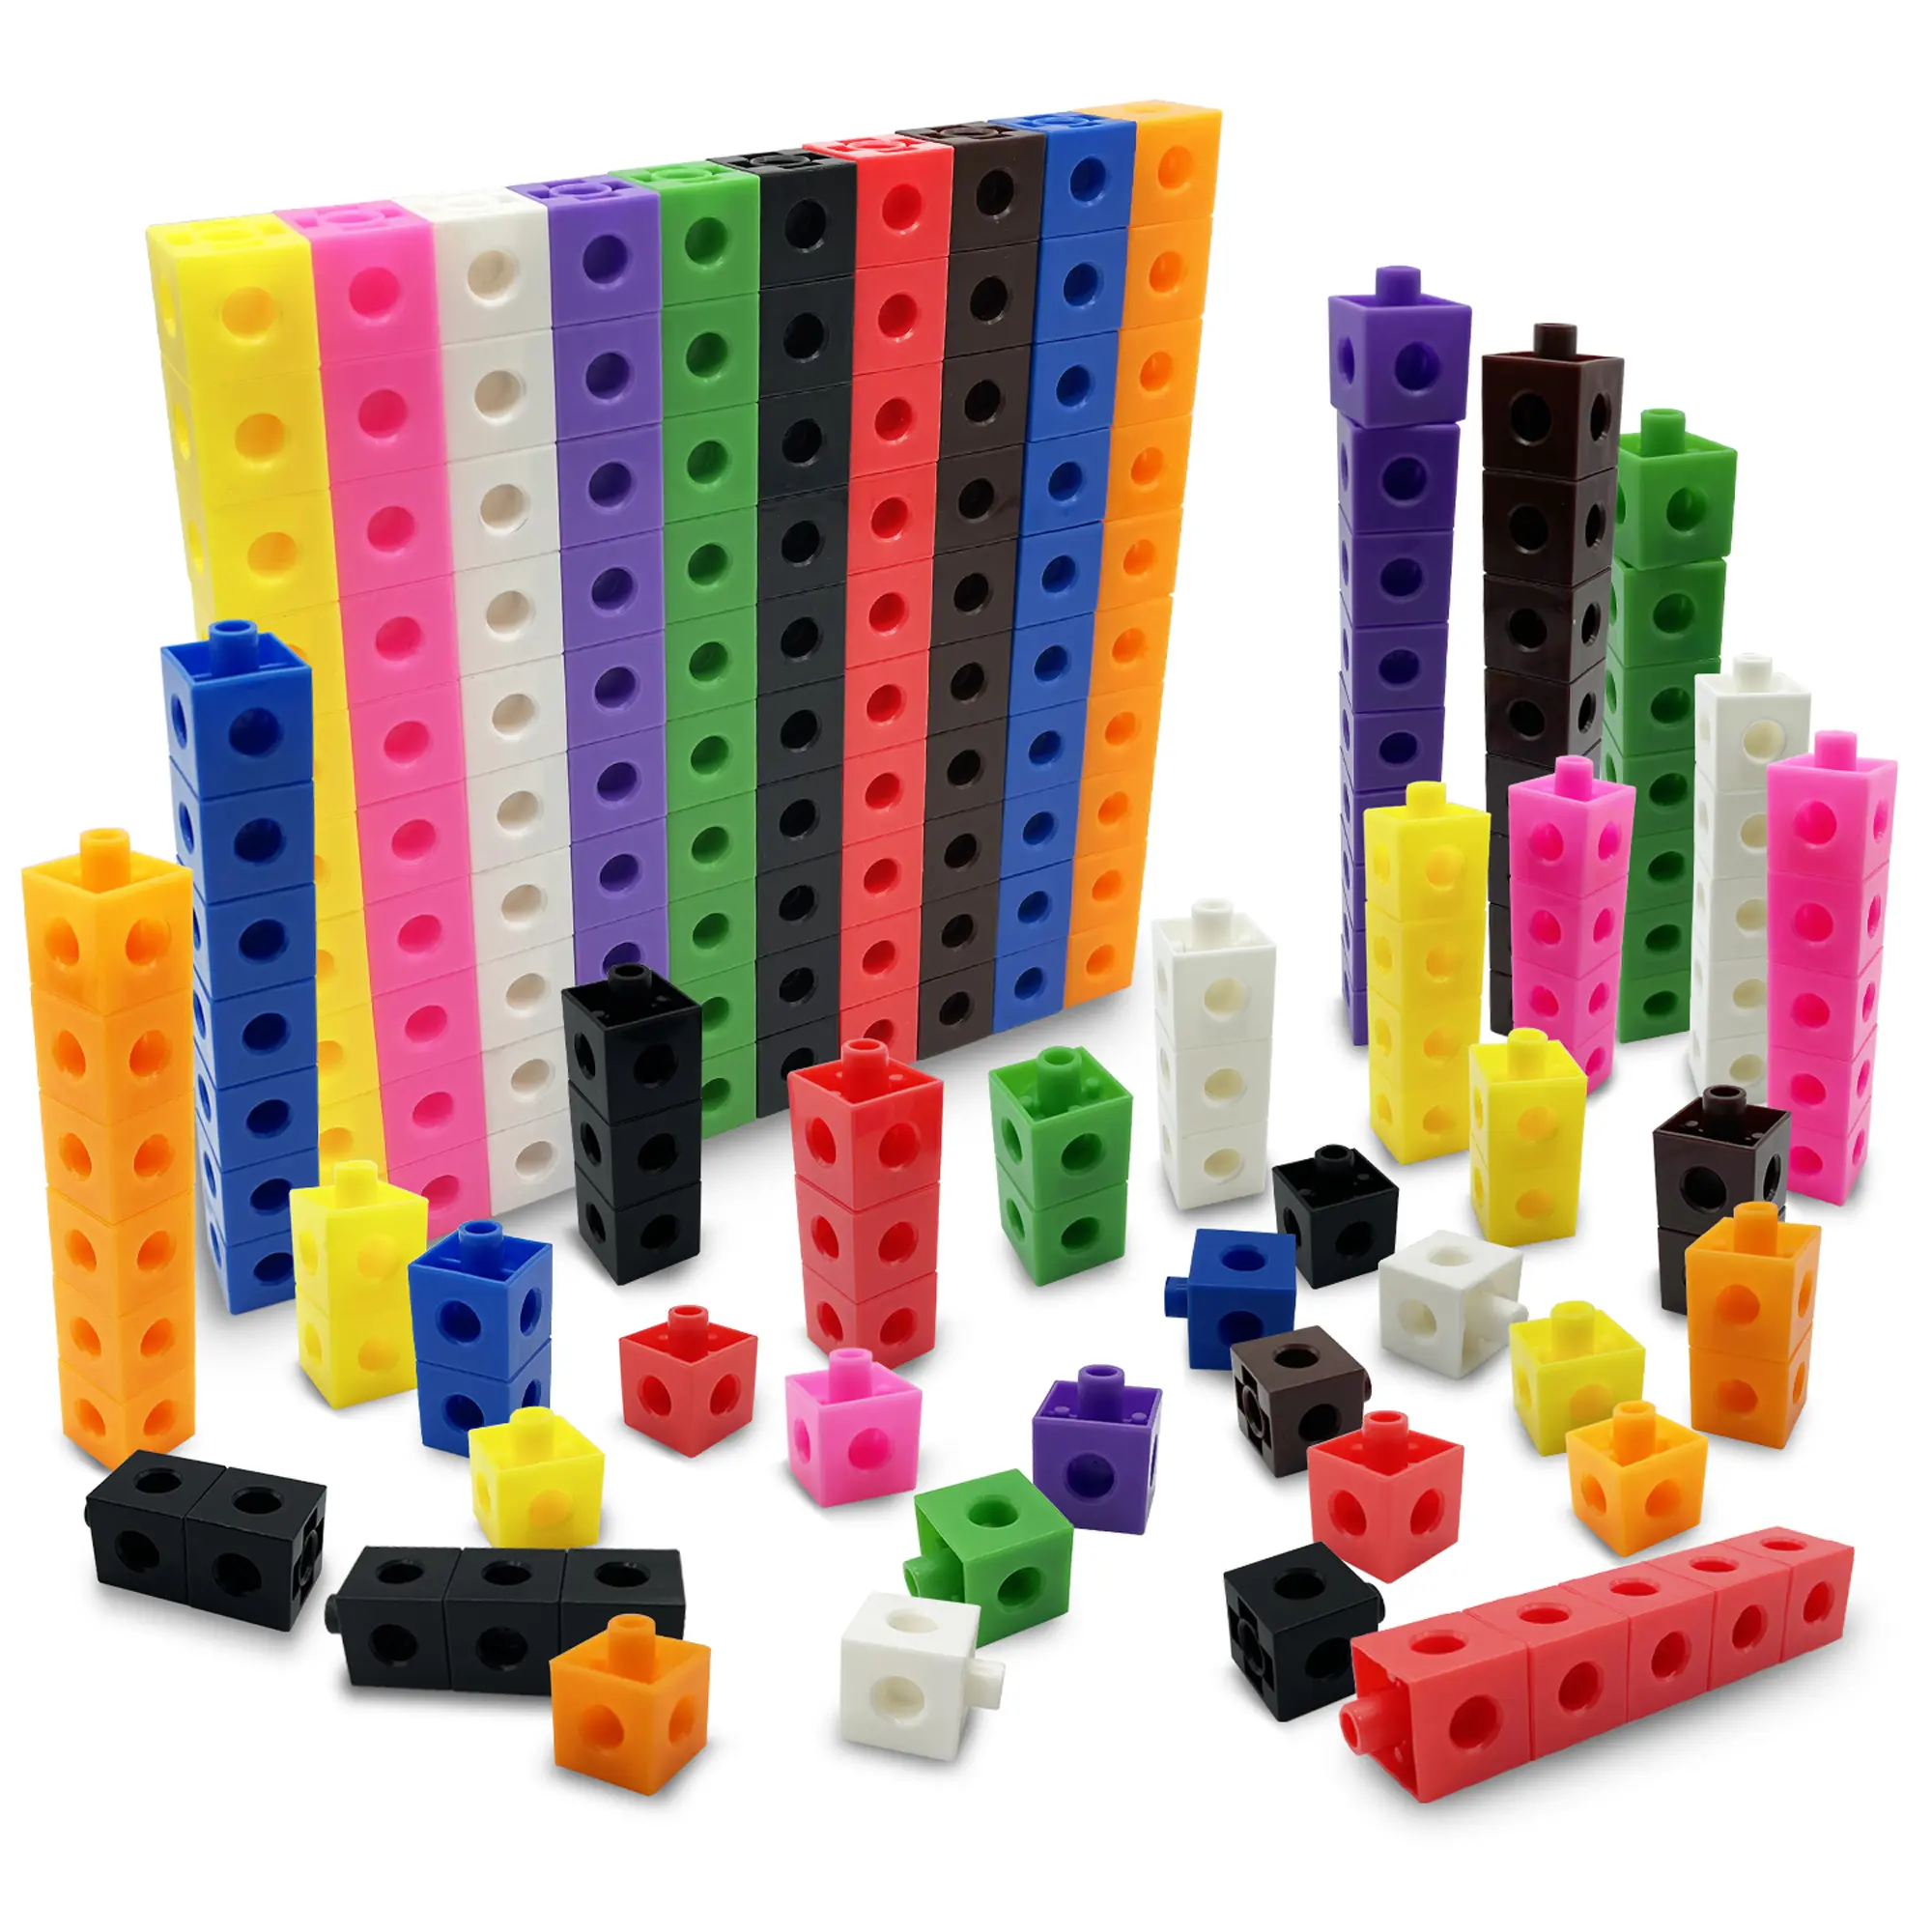 100 шт. 10 видов цветов многоканальной связи подсчета кубики оснастки блоки обучение математике манипулятор для детей раннего образования деревянная игрушка